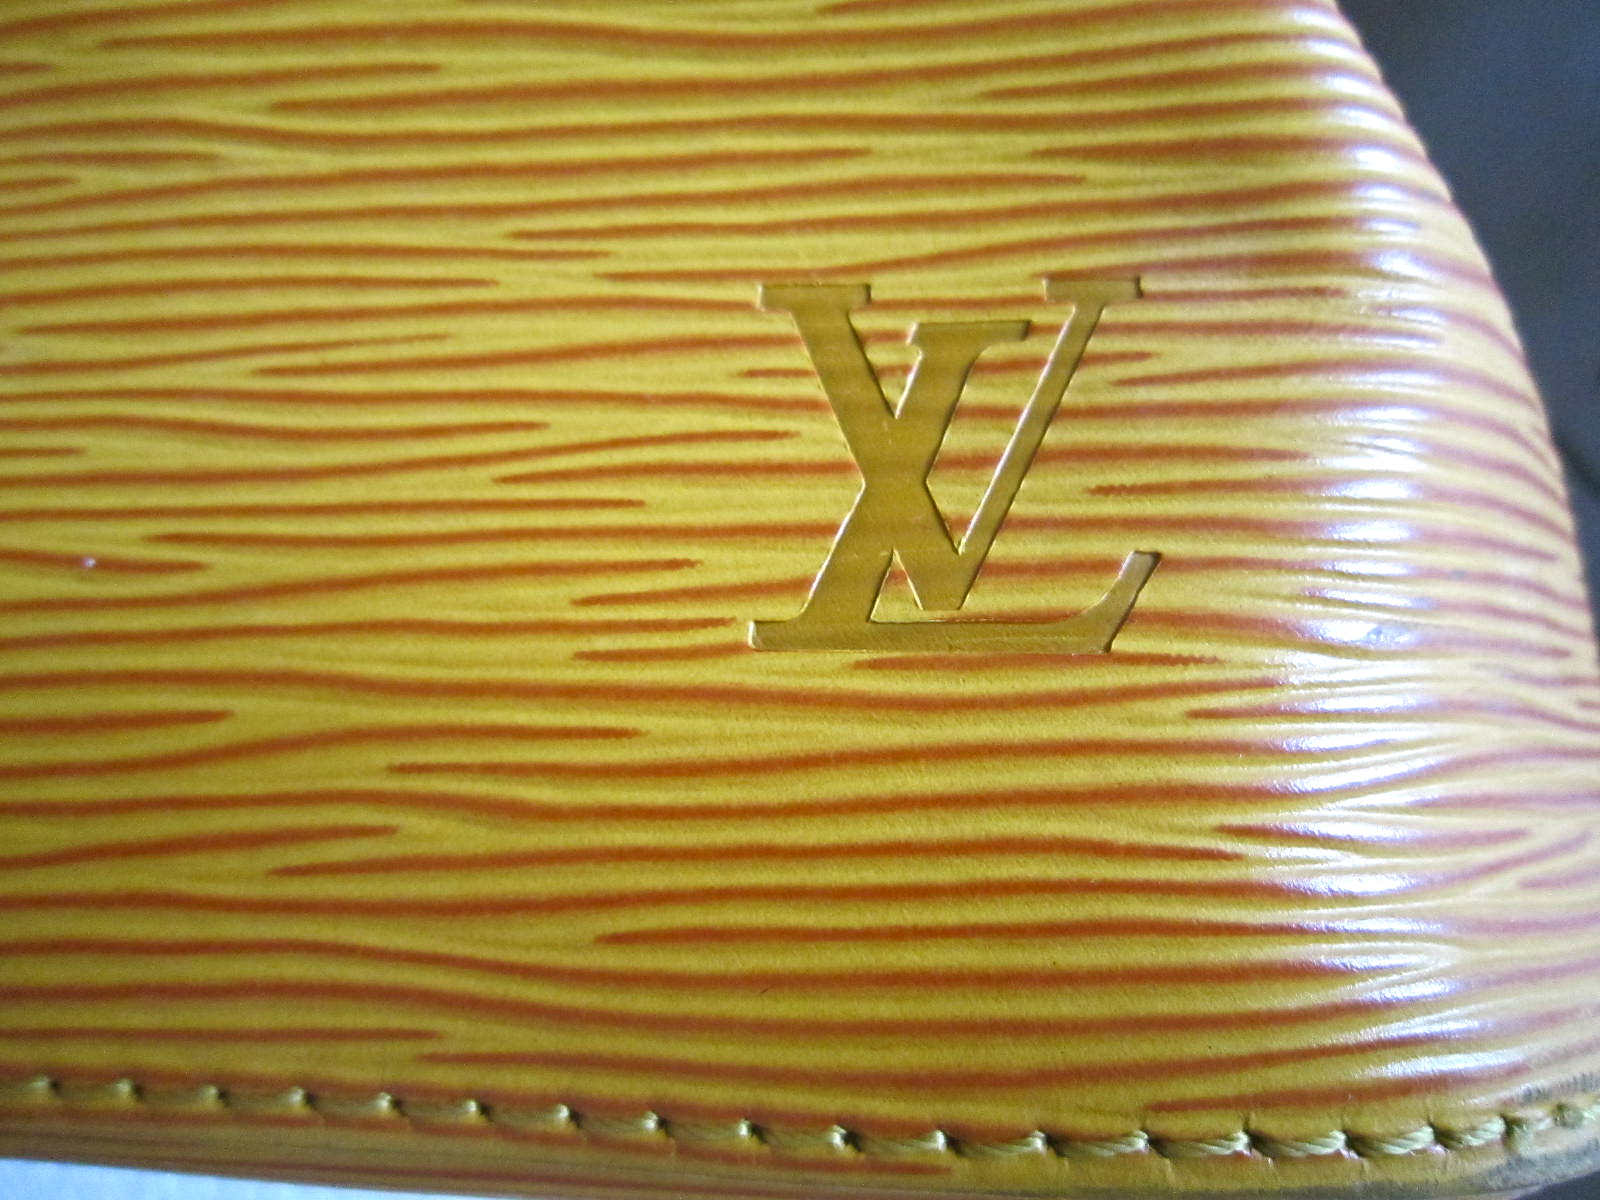 Louis Vuitton 1998 Noe Drawstring Shoulder Bag Epi Yellow M40973 – AMORE  Vintage Tokyo